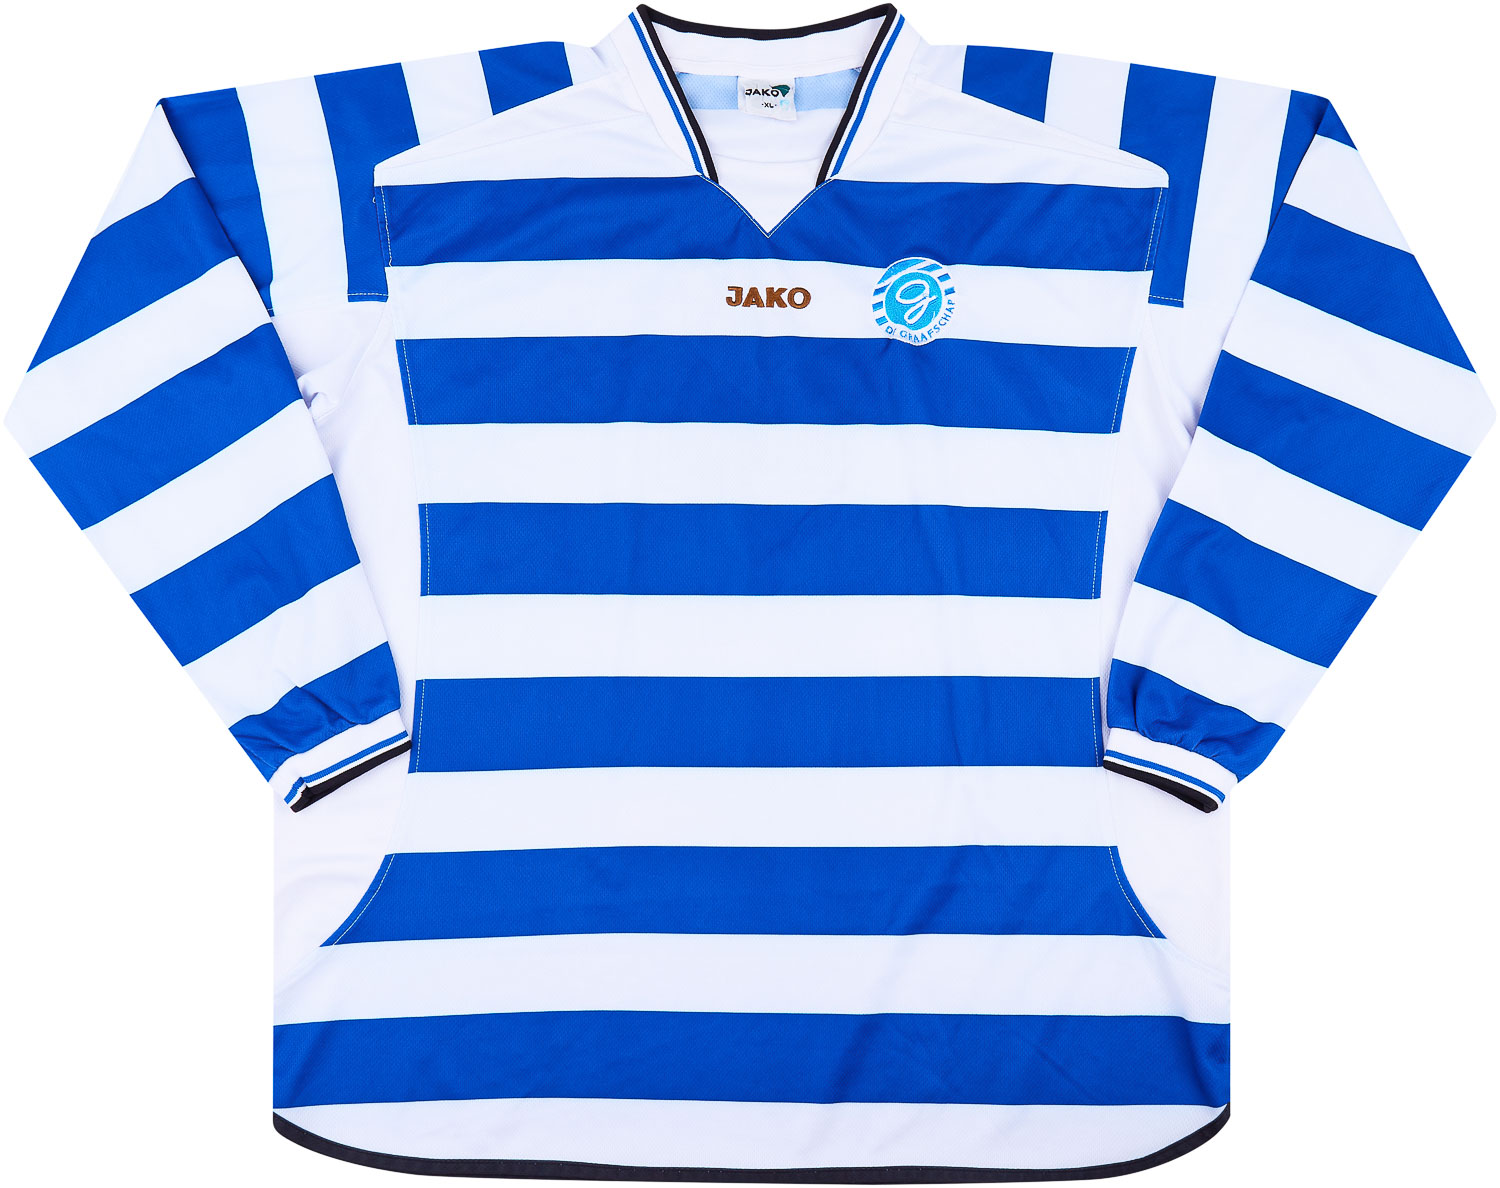 De Graafschap  home shirt  (Original)